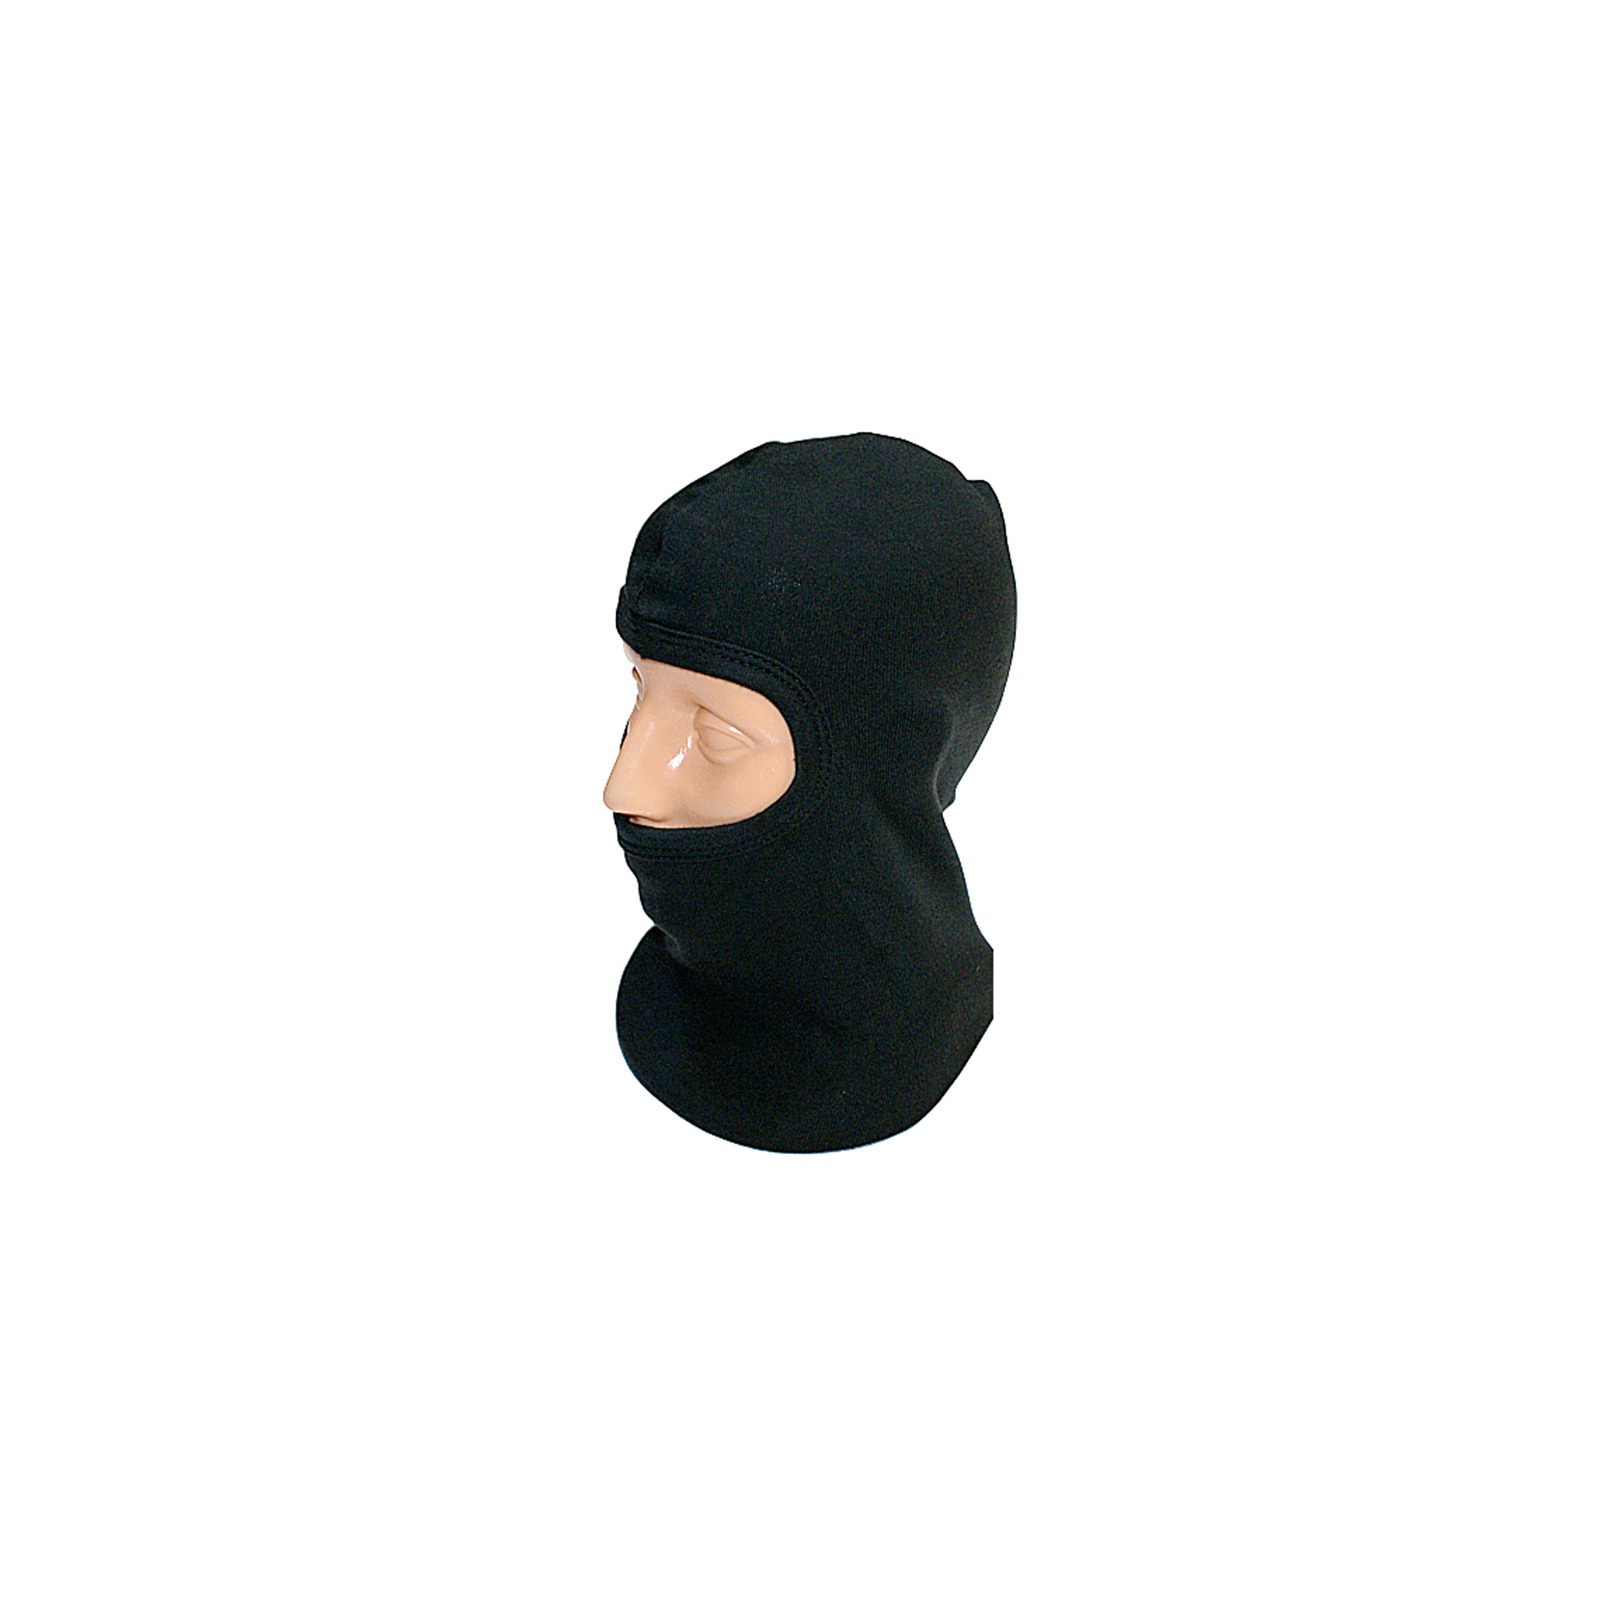 Sturmhaube aus Baumwolle schwarz Motorrad-Maske